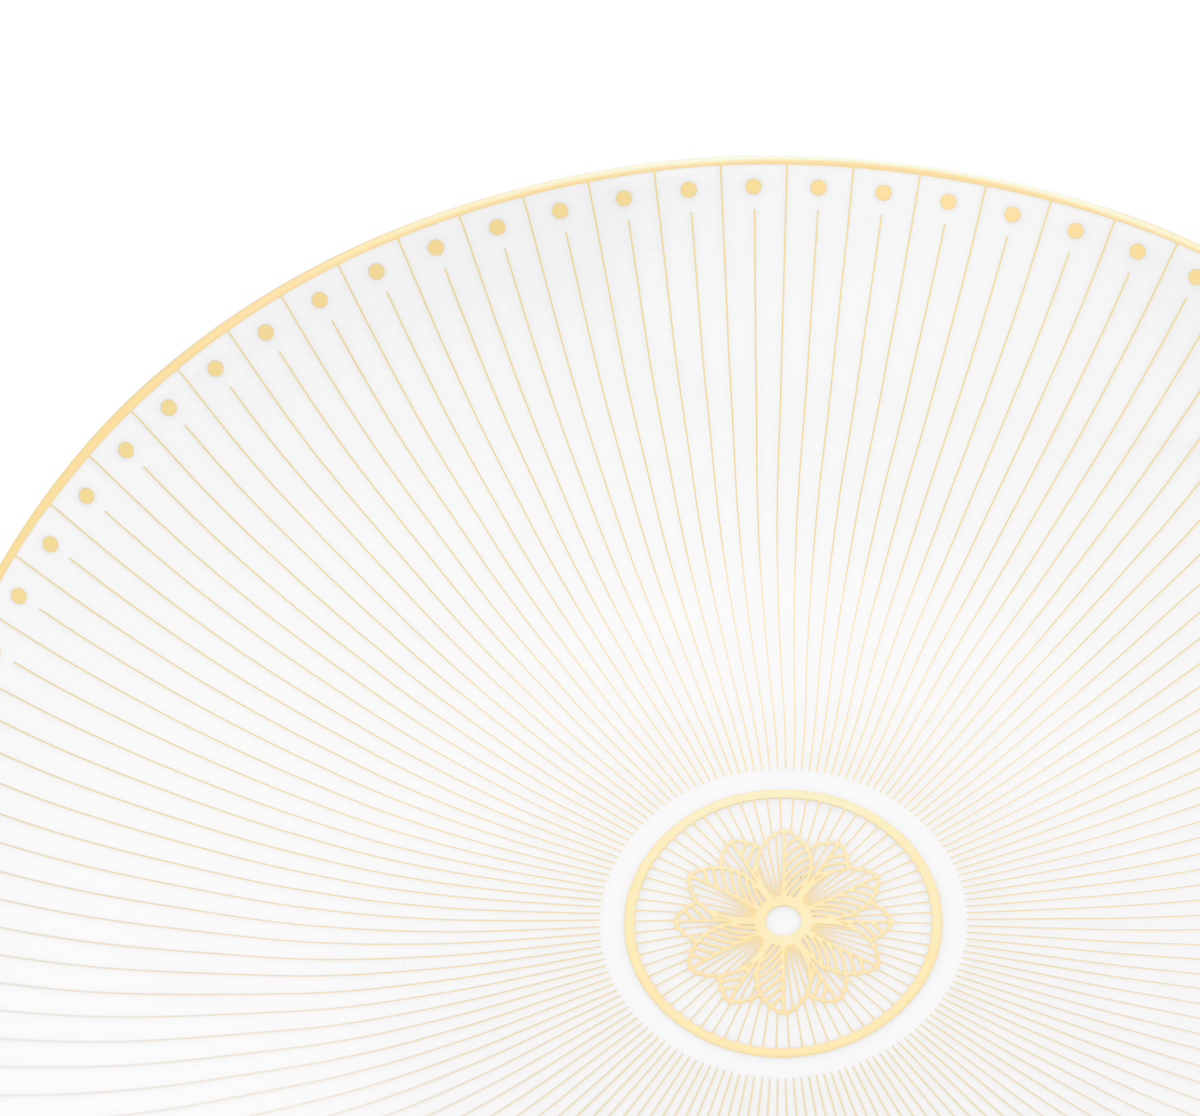 Malmaison Imperiale Porcelain Dessert plate